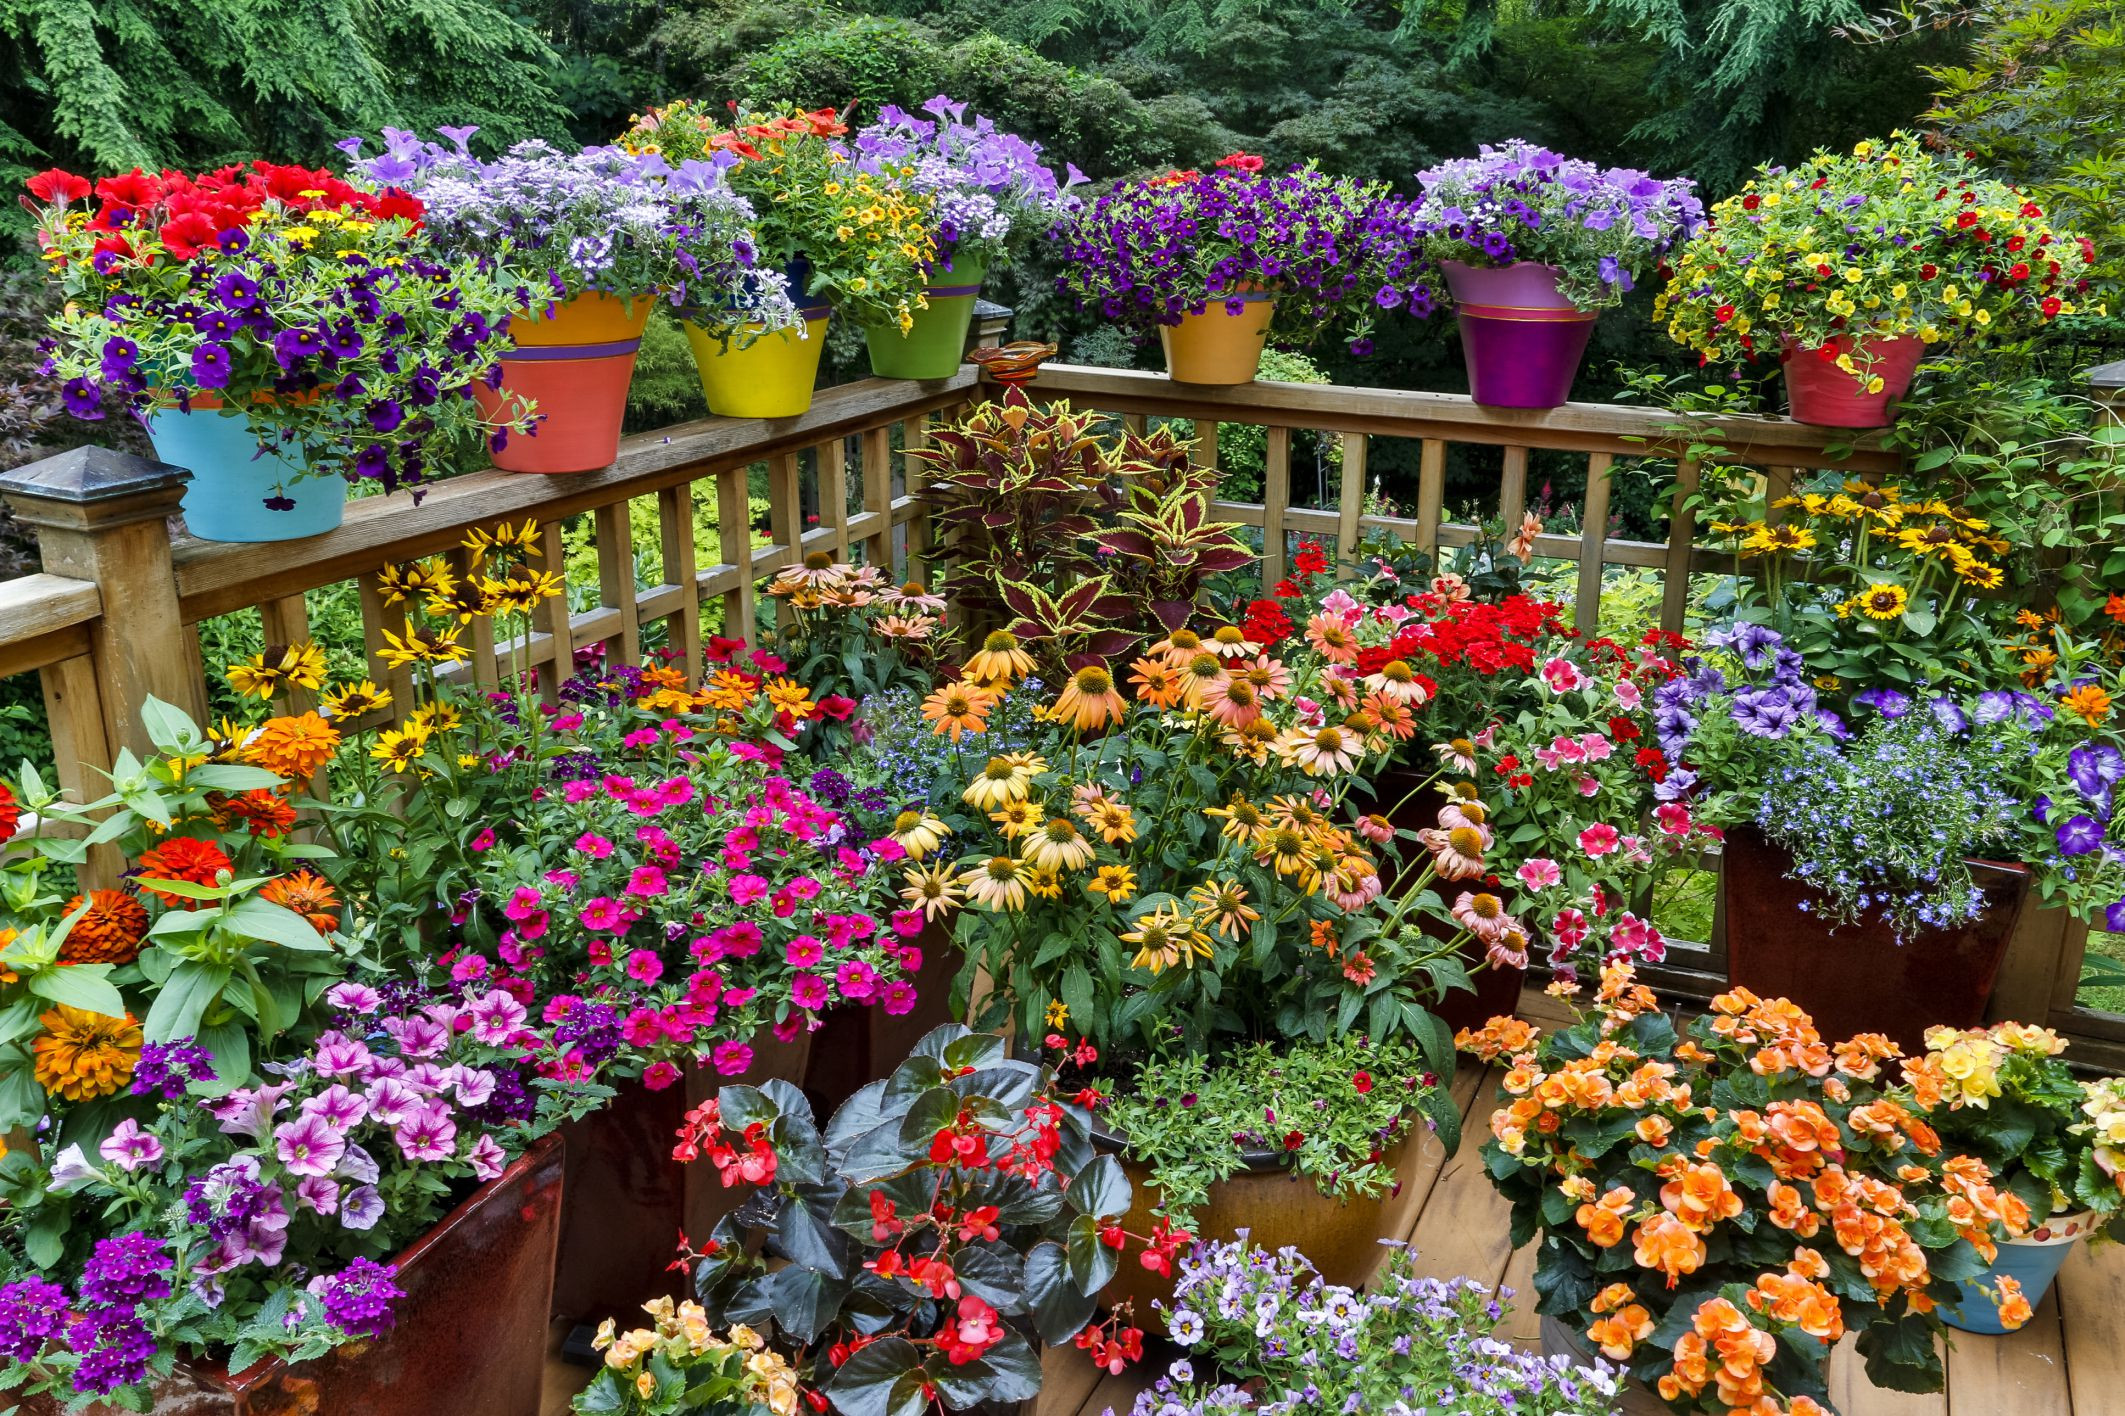 Best ideas about Container Flower Garden Ideas
. Save or Pin 12 Ideas for Flowering Container Gardens Now.